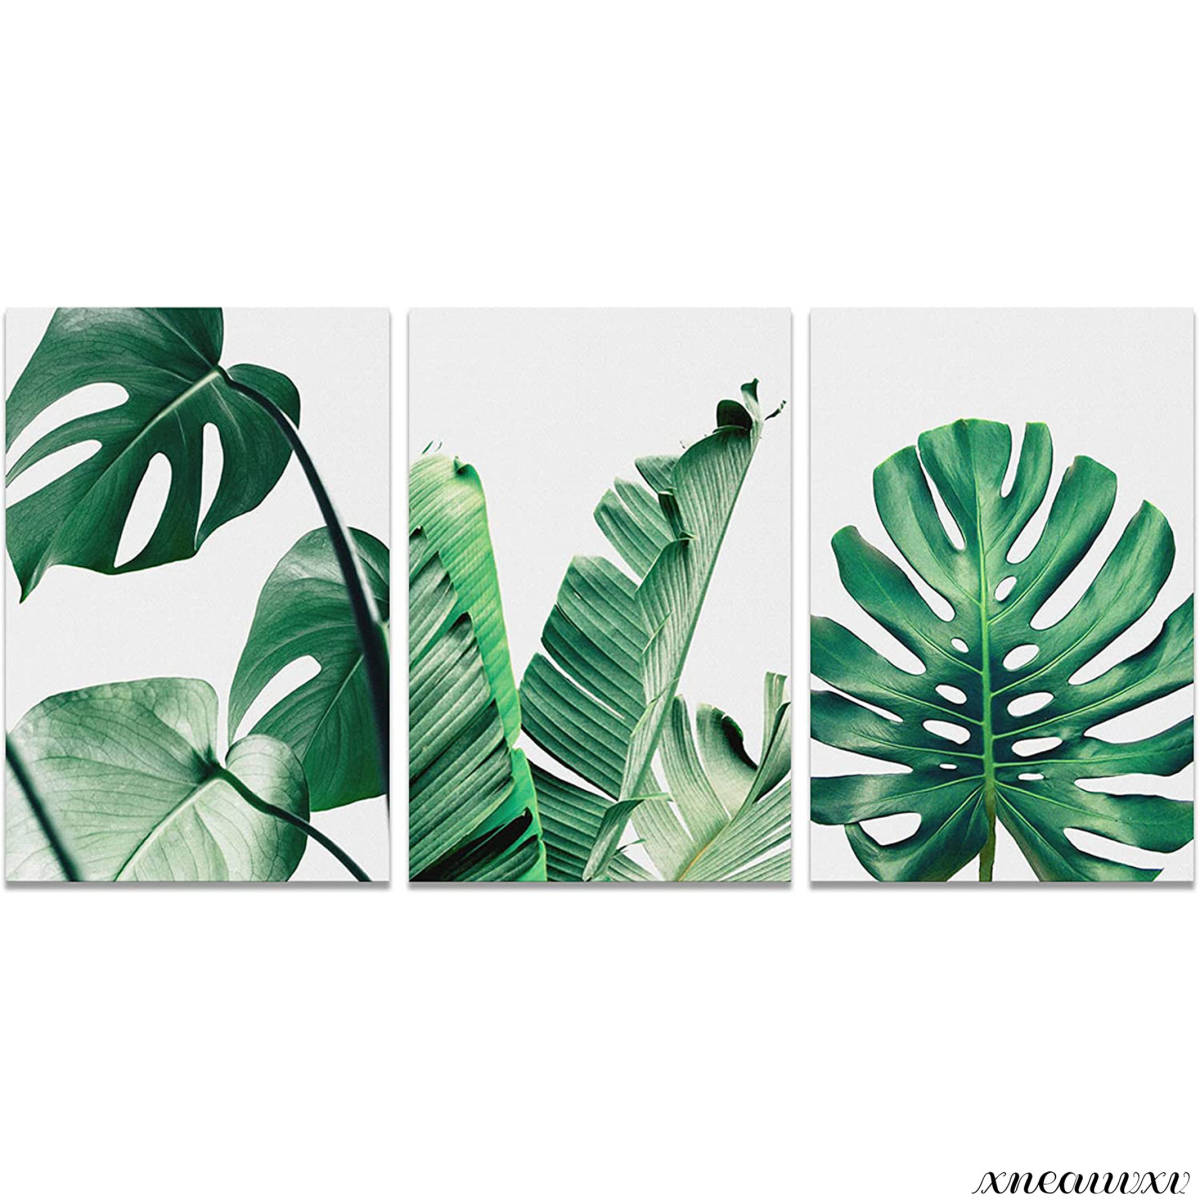 रंगीन 3-पैनल कला पैनल, पौधे, प्रकृति, हरा, पत्तियों, आंतरिक भाग, कमरे की सजावट, सजावट, तस्वीर, 3-पैनल, दीवार पर लटकने वाले, स्टाइलिश, कलाकृति, चित्रकारी, ग्राफ़िक